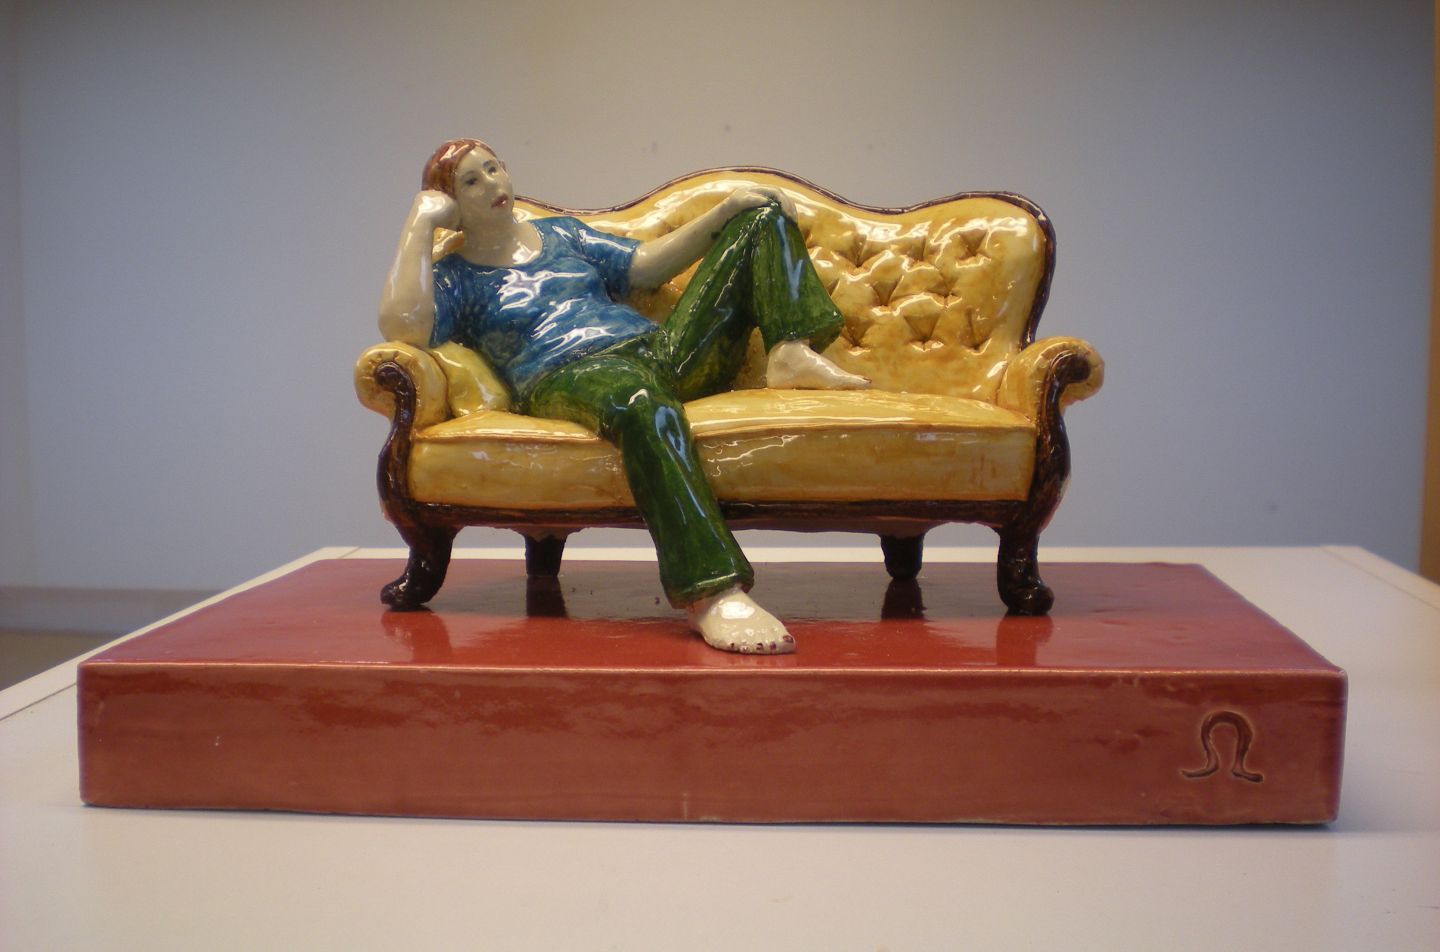 alt='Foto av en skulptur. En gul rokokosoffa på en röd sockel. I soffan sitter en kvinna tillbakalutad med gröna byxor och blå tröja. '